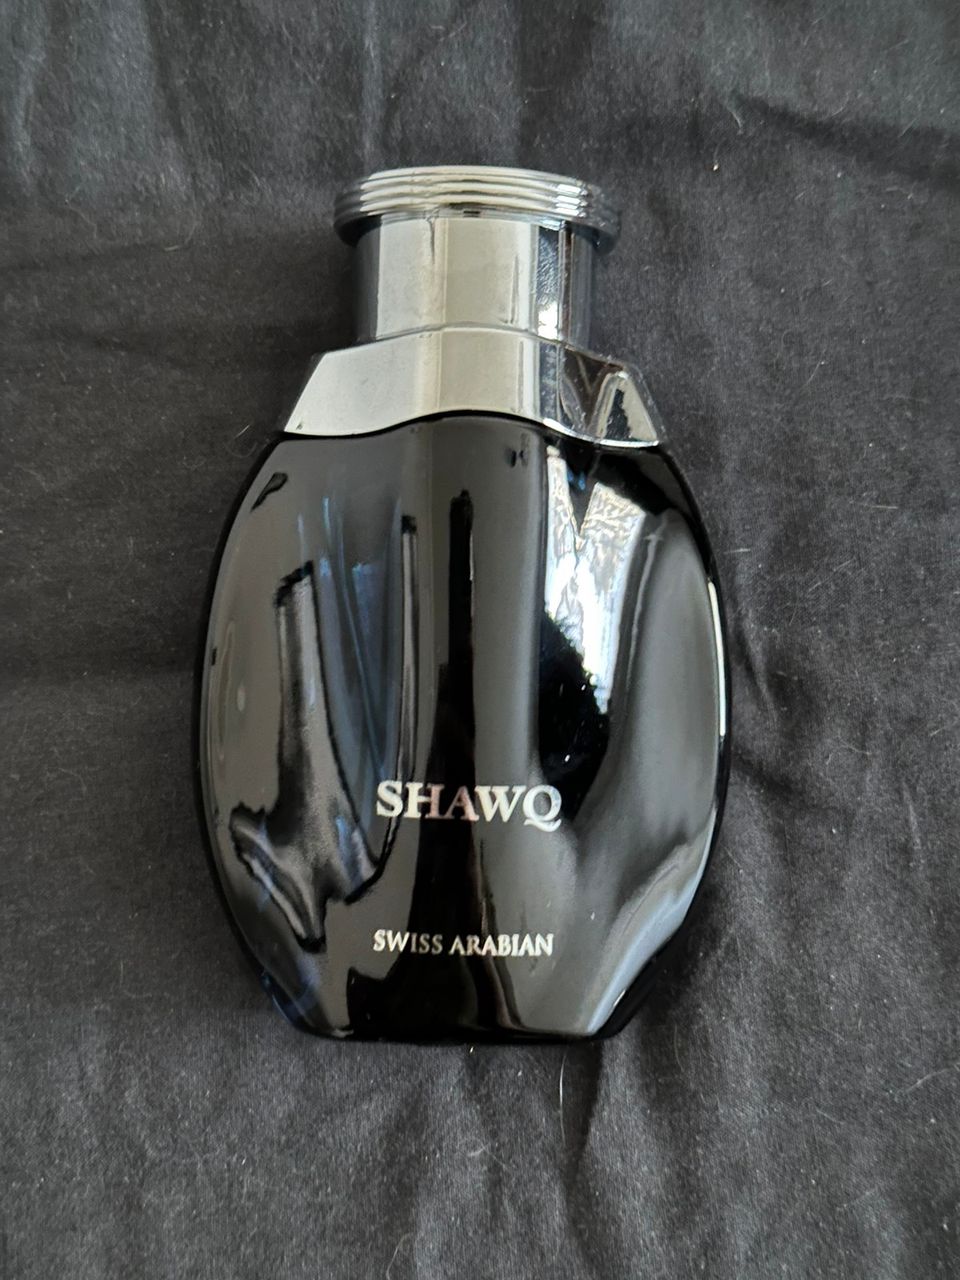 Swiss Arabian Shawq hajuvesi